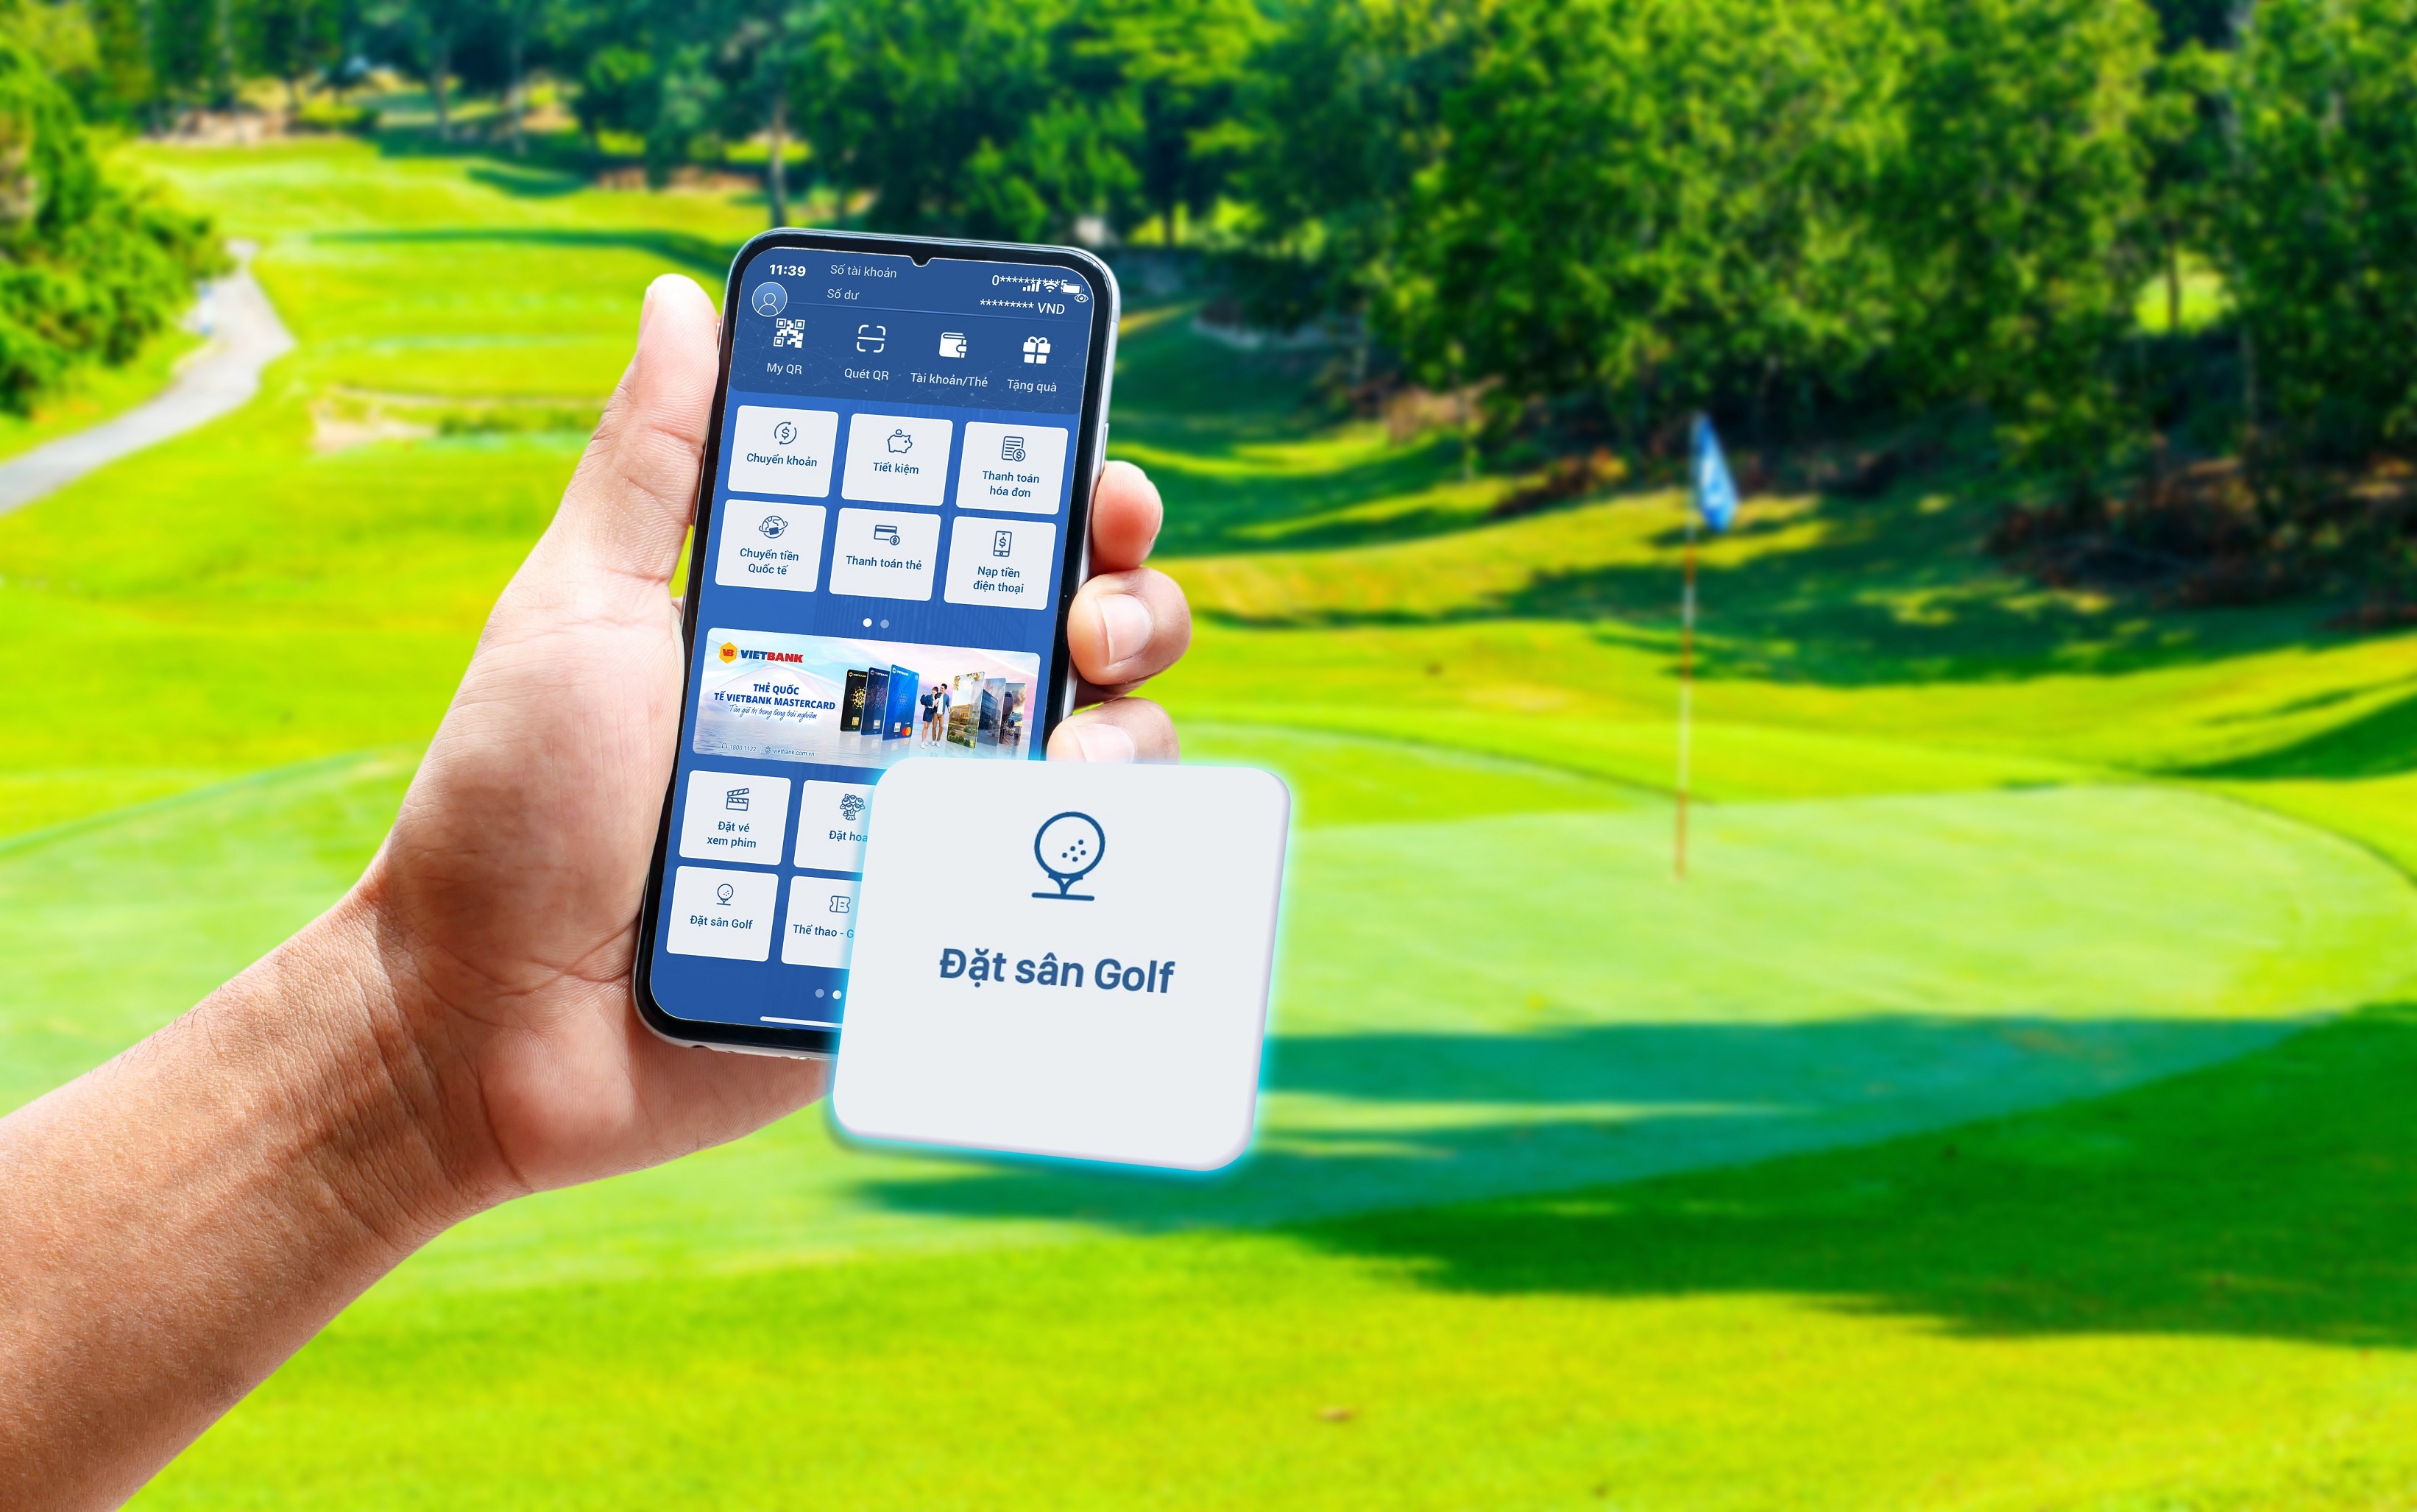 Tính năng “Đặt sân golf” trên ứng dụng Vietbank Digital cho phép khách hàng lựa chọn hệ thống gần 100 sân golf đẹp